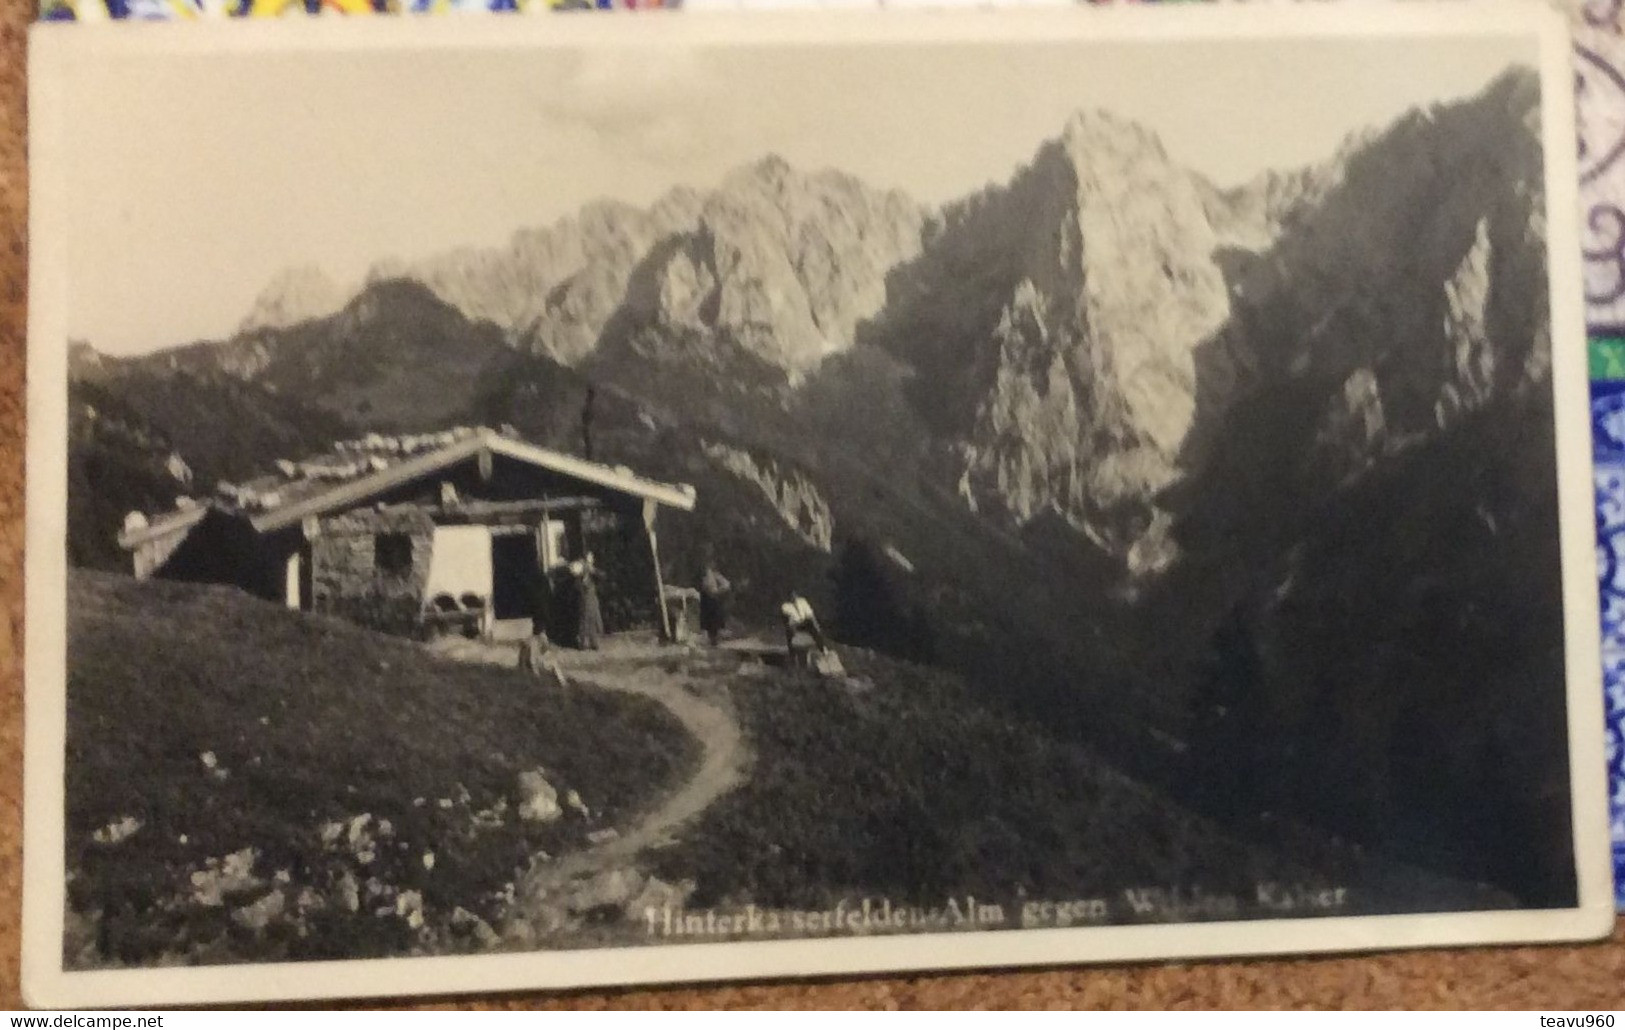 OLD POSTCARD AUSTRIA (Österreich) TIROL Hinterkaiserfelden Alm  Ist Liegt In Der Nähe Von Vordere Steingrube.AK 1943 - Steinach Am Brenner